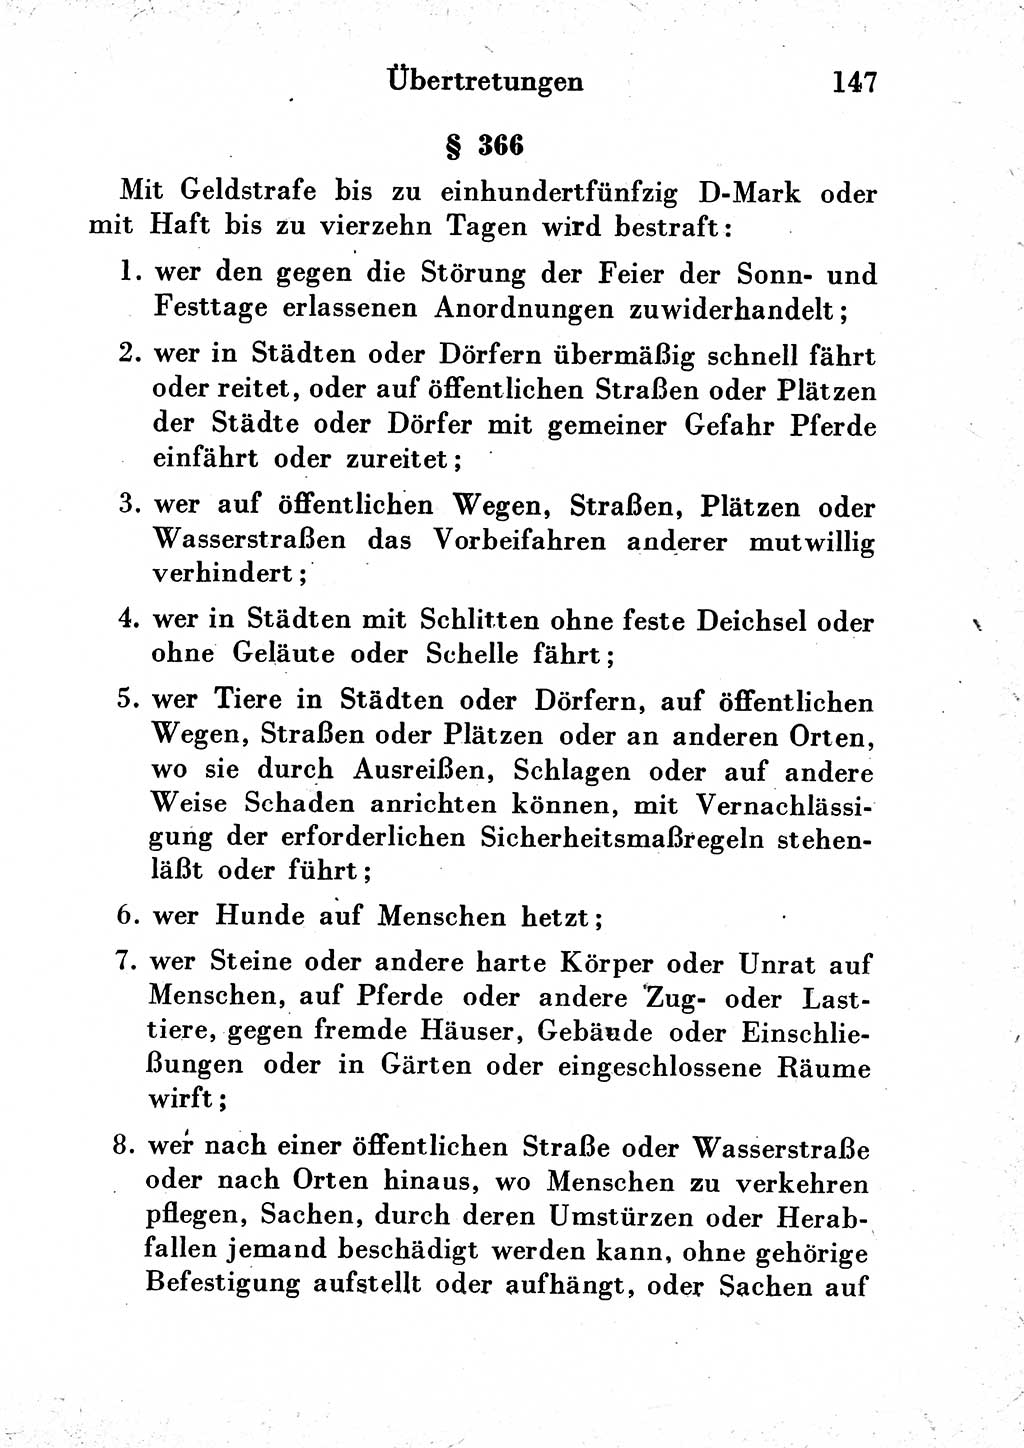 Strafgesetzbuch (StGB) und andere Strafgesetze [Deutsche Demokratische Republik (DDR)] 1954, Seite 147 (StGB Strafges. DDR 1954, S. 147)